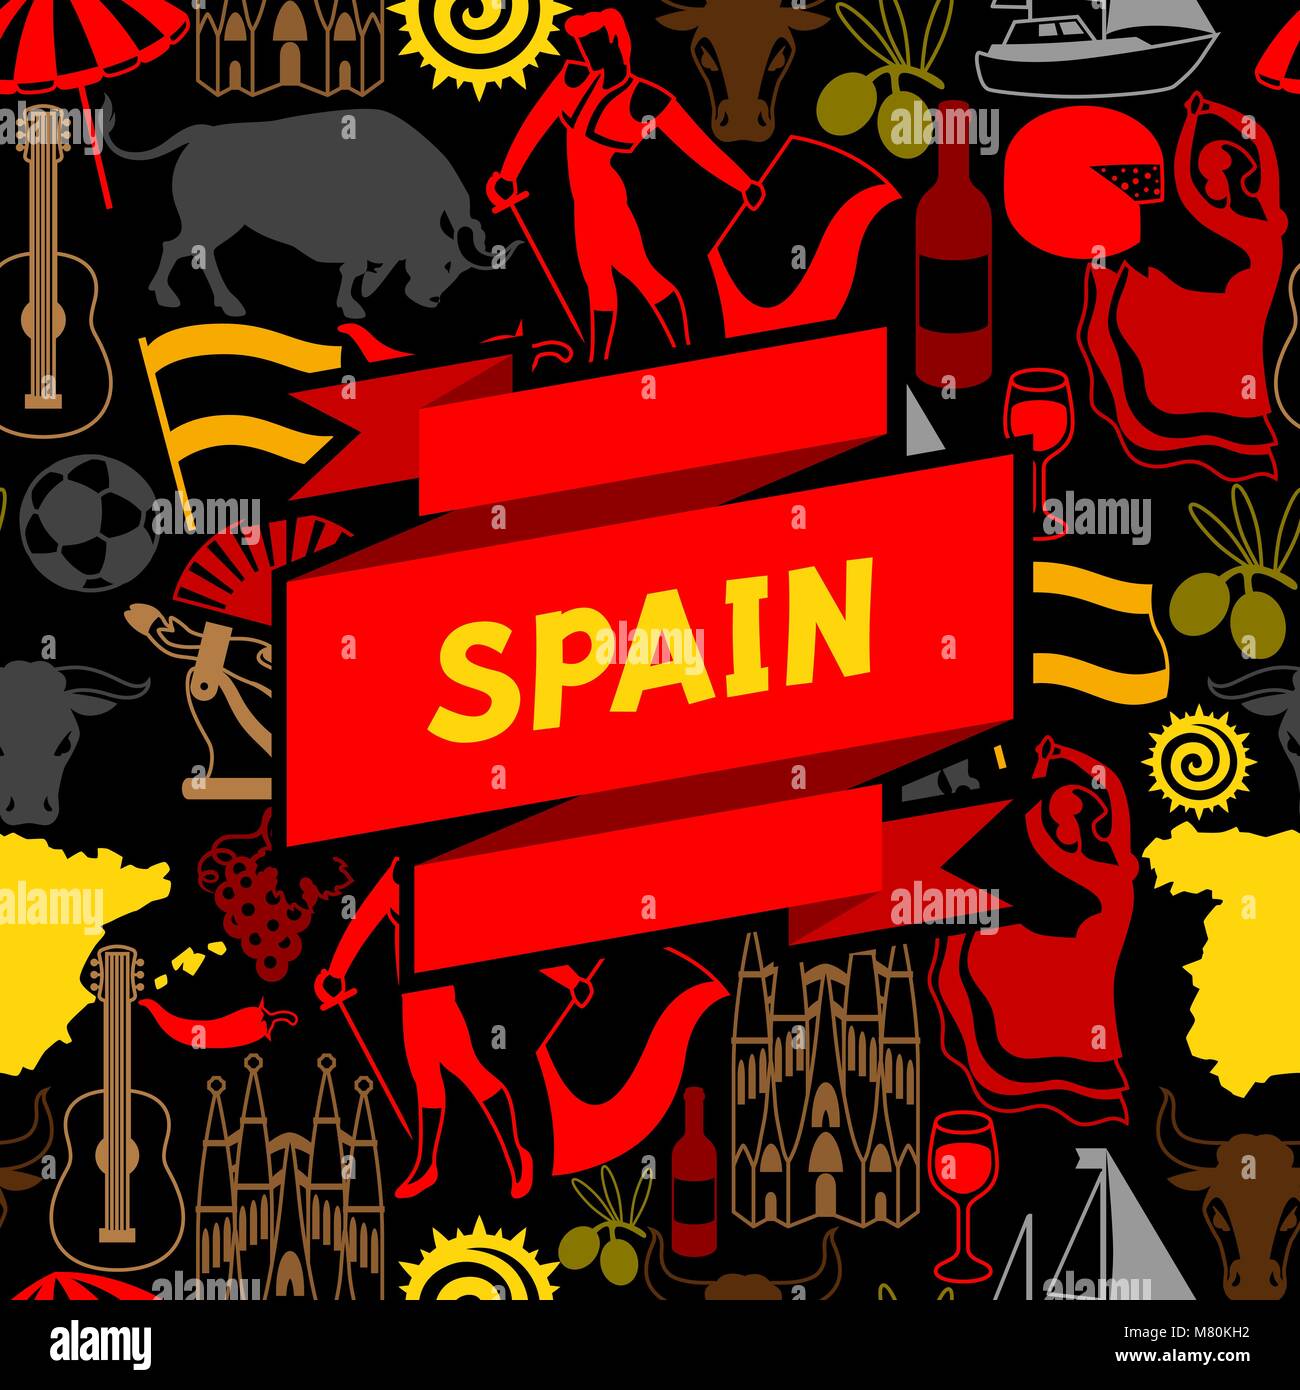 Thiết kế văn hóa Tây Ban Nha độc đáo và đầy sáng tạo, với những họa tiết tinh tế và màu sắc tươi sáng. Hãy xem hình ảnh để khám phá thêm về thiết kế văn hóa đa dạng của Tây Ban Nha.